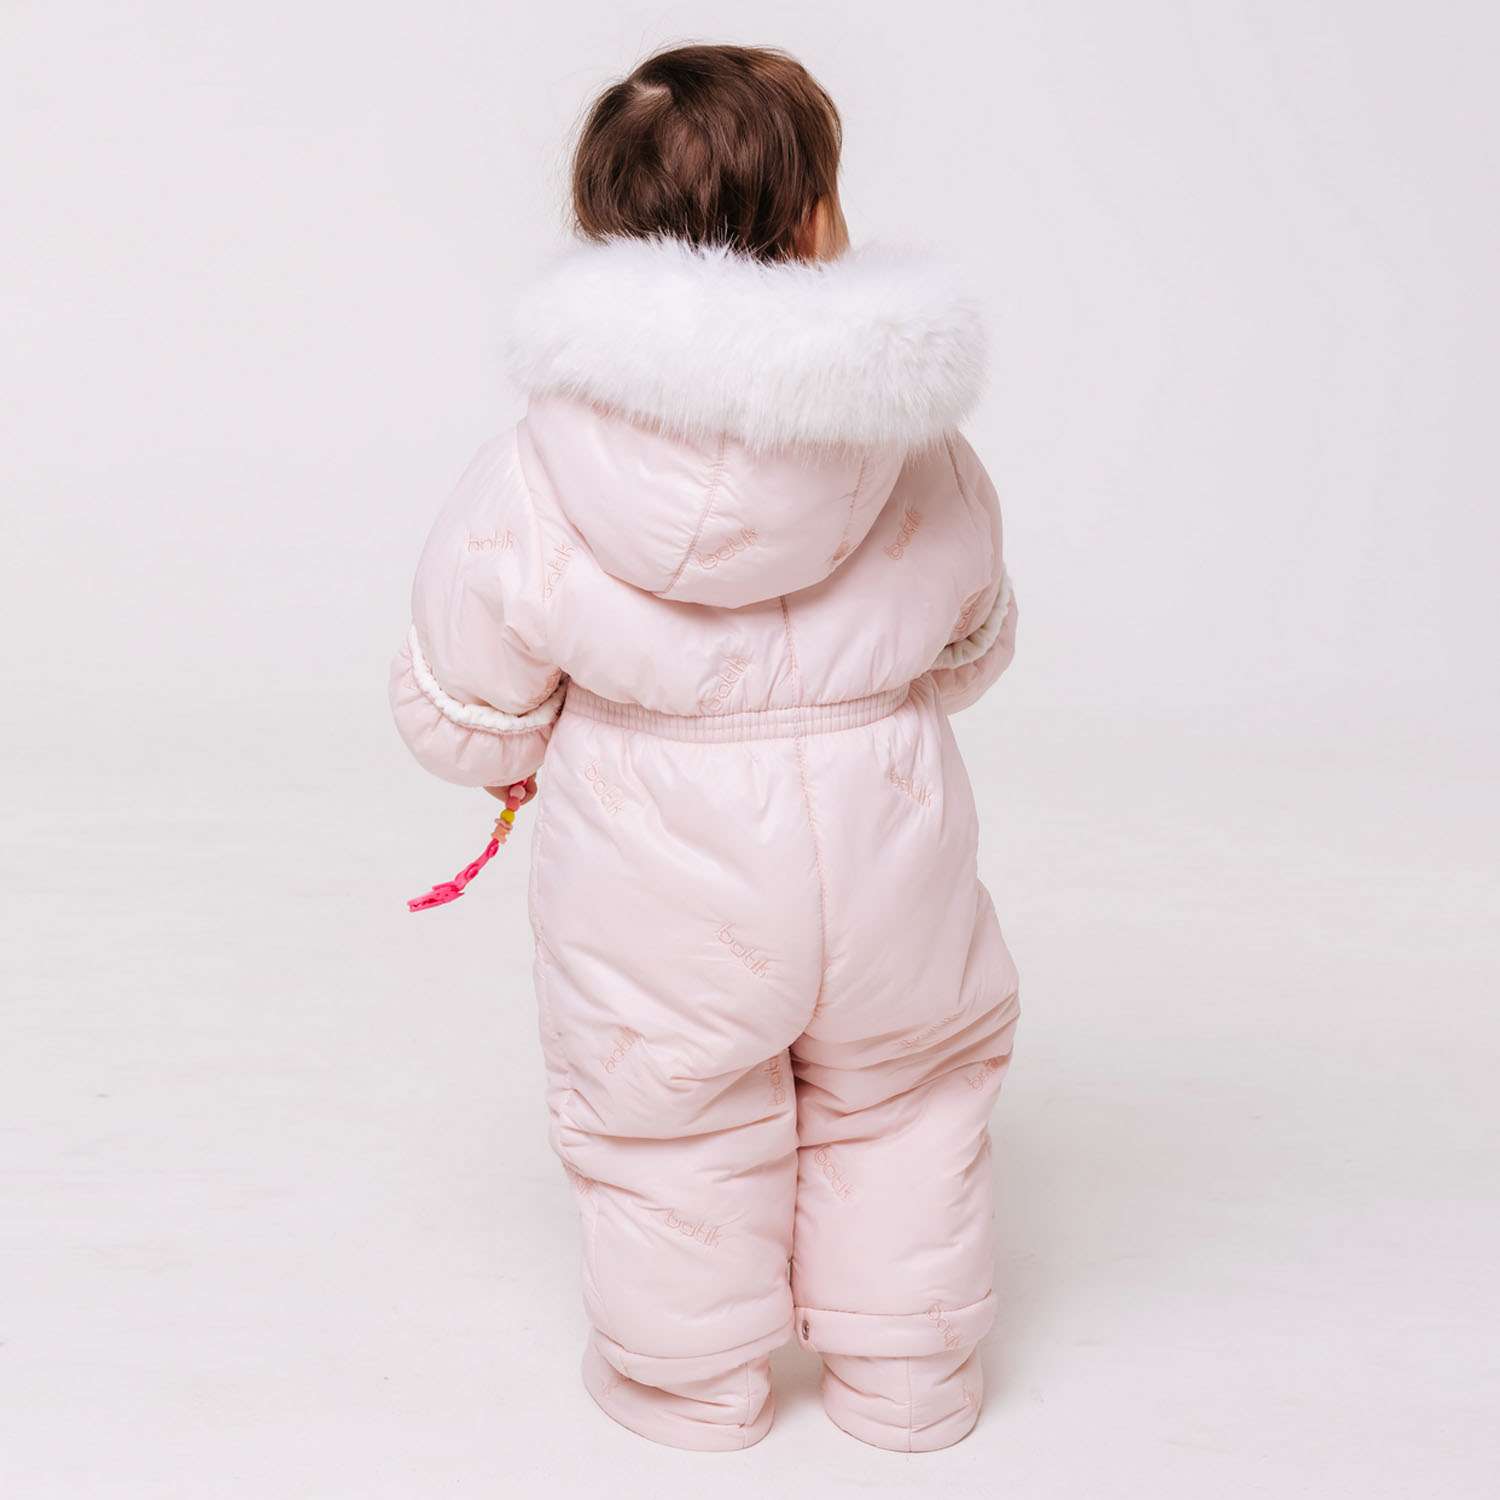 Верхняя детская одежда Зима коллекции 2018/2019 года уже на нашем сайте.